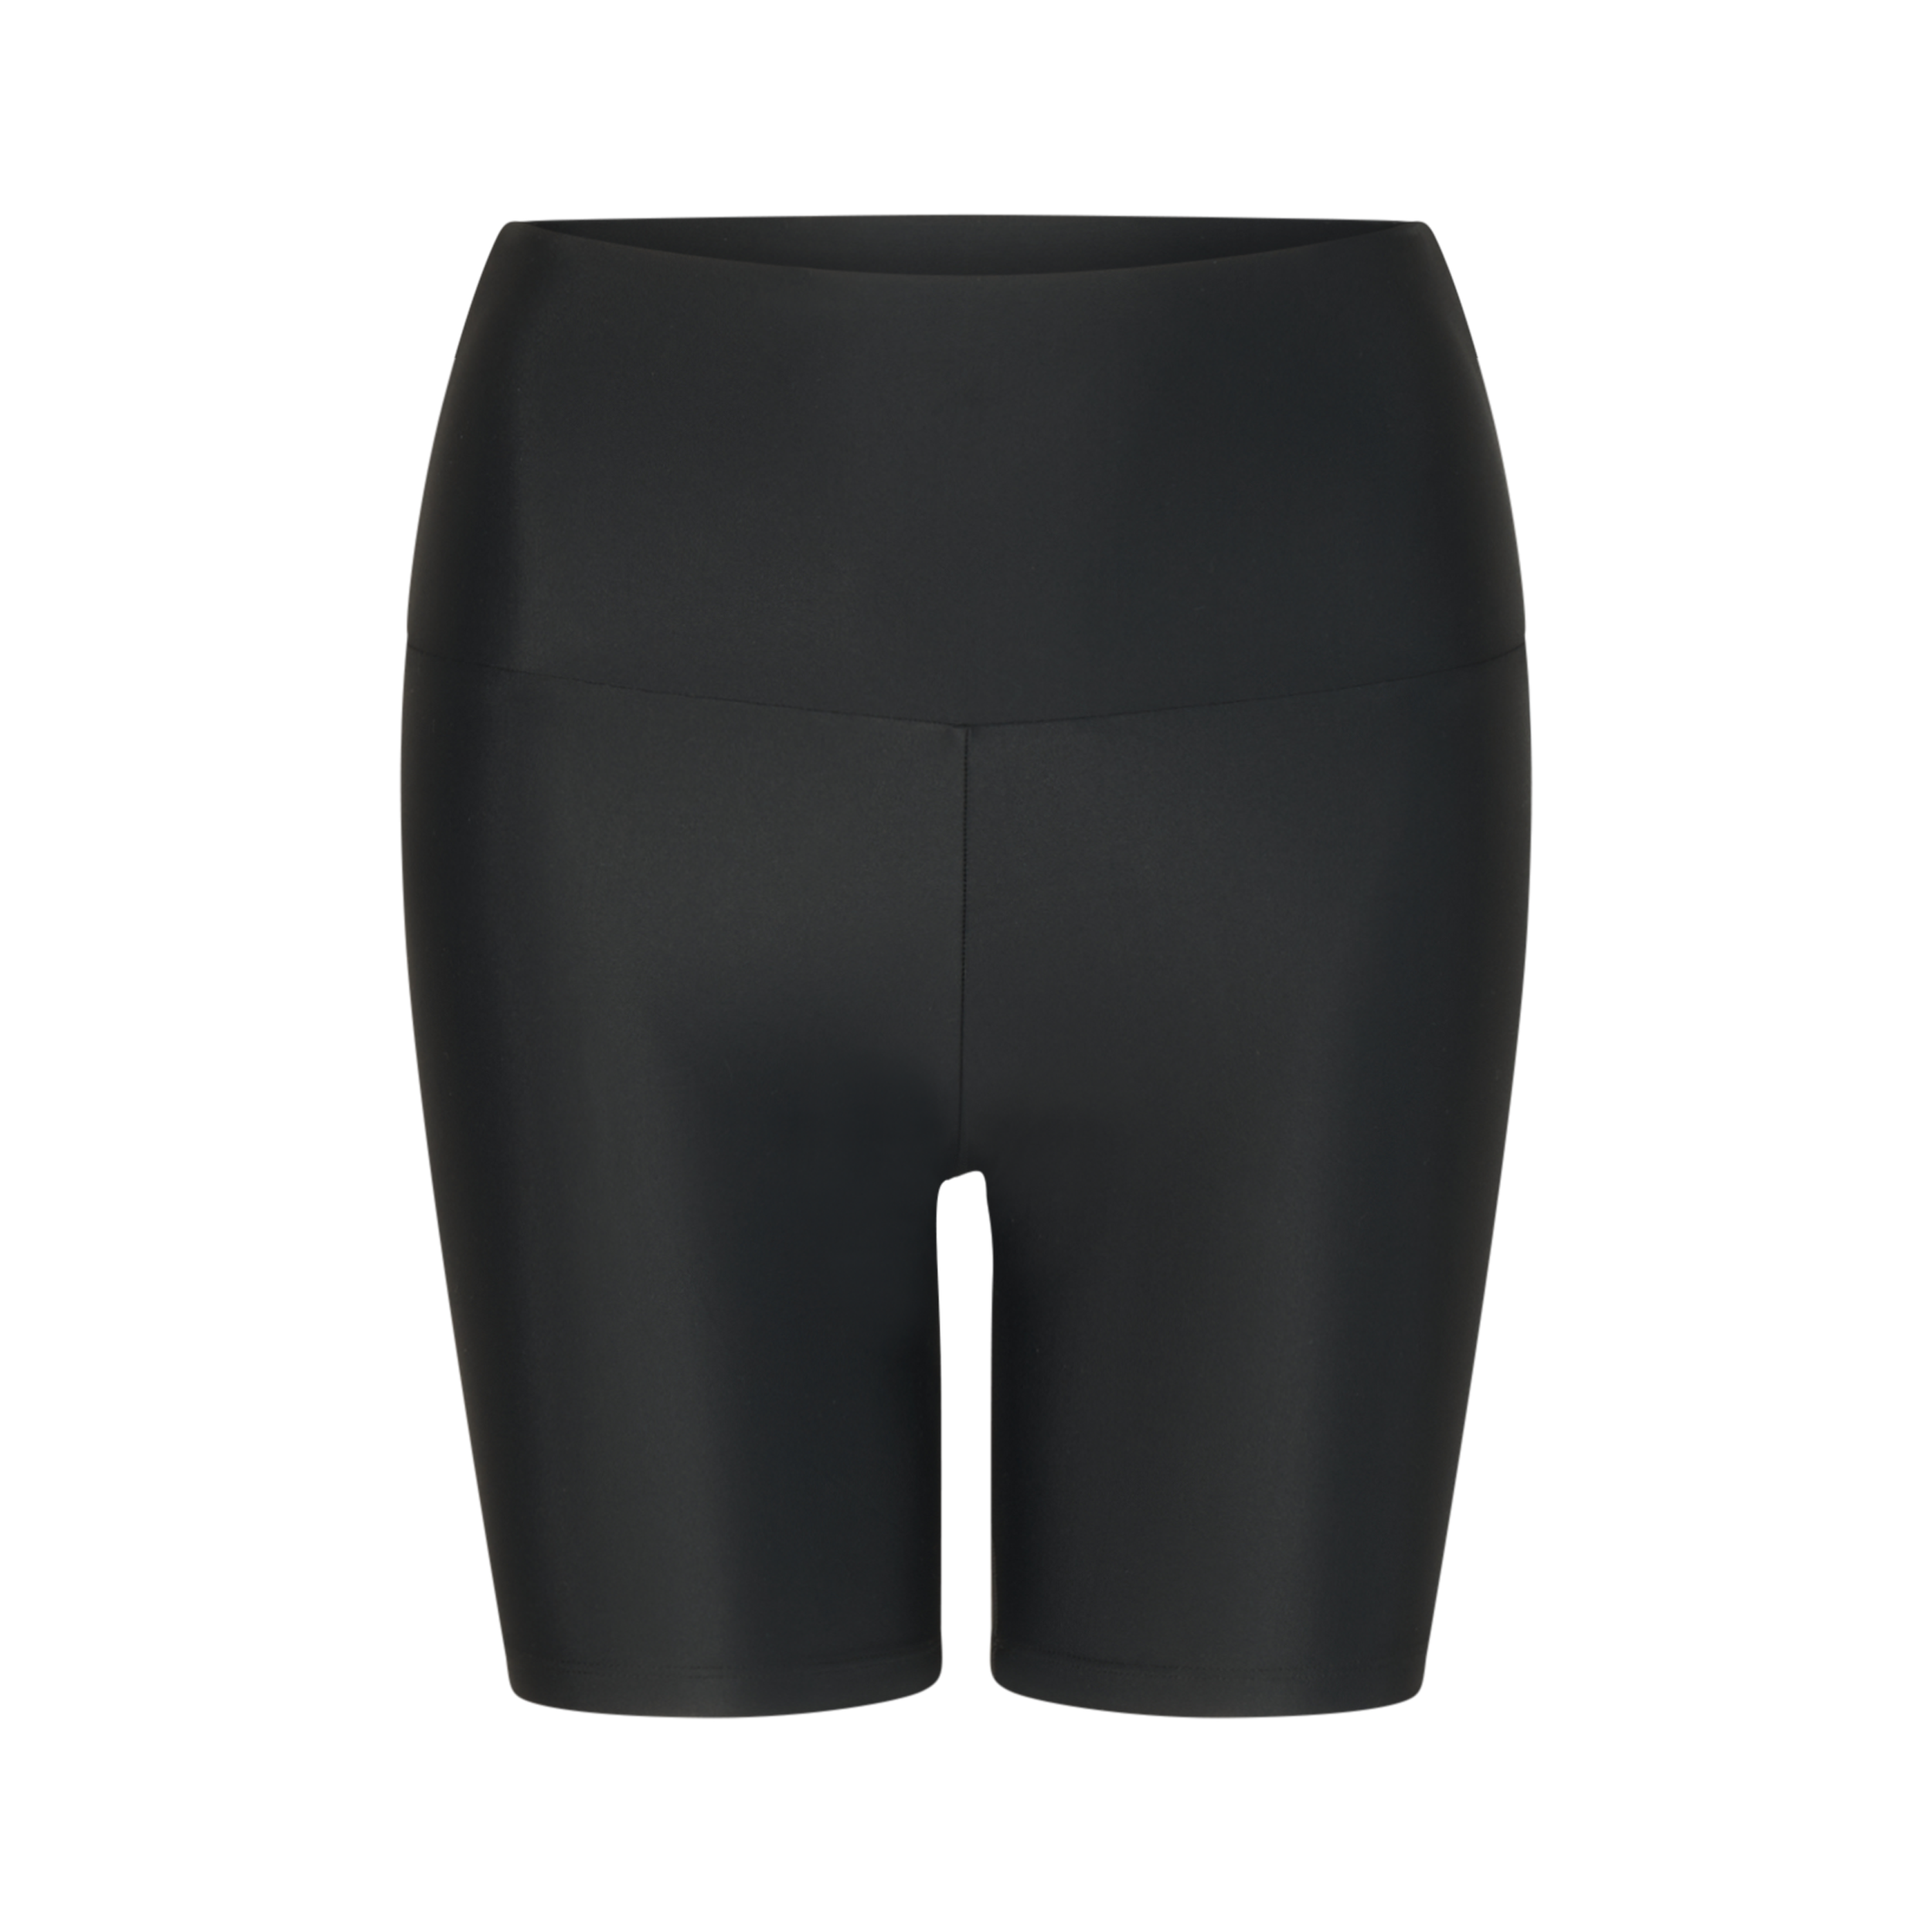 Produktbild der Radler Shorts in Schwarz von vorne